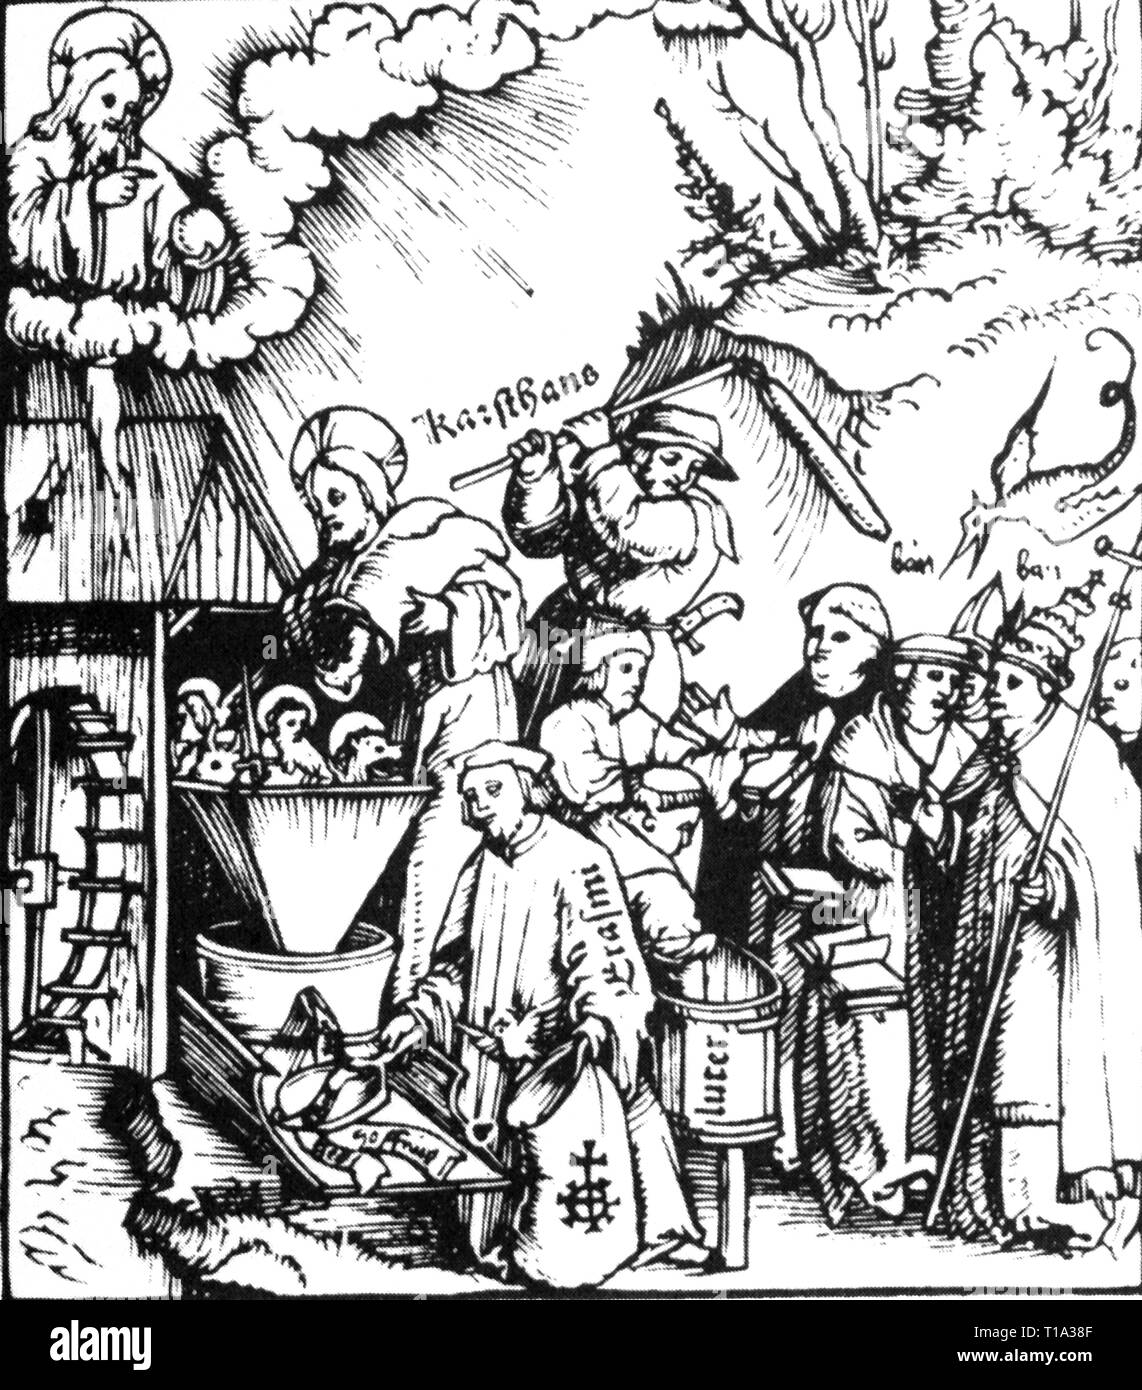 La religion, réforme / vente des indulgences, 'The Divine Mill', gravure sur bois, pour la brochure de Martin Seger (vers 1470 - 1534) / Hans Fuessli (1477 - 1538), d'imprimer : Christoph Froschauer l'Aîné, Zurich, 1521, Additional-Rights Clearance-Info-Not-Available- Banque D'Images